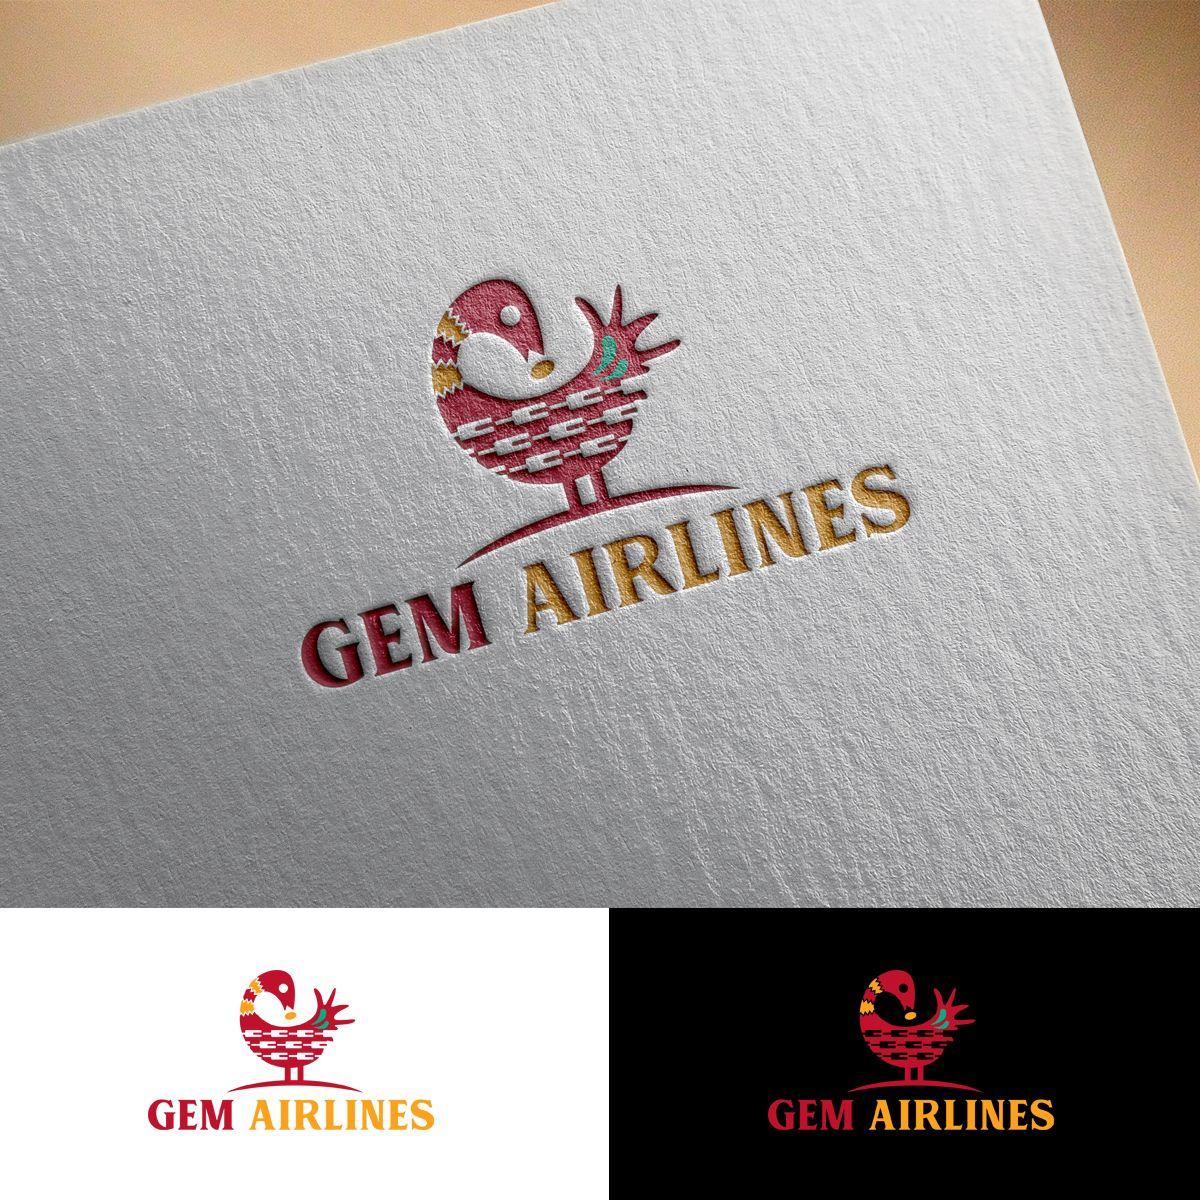 Airline Rooster Logo - Professional, Bold Logo Design for Gem Airlines or Gem Aviation ...